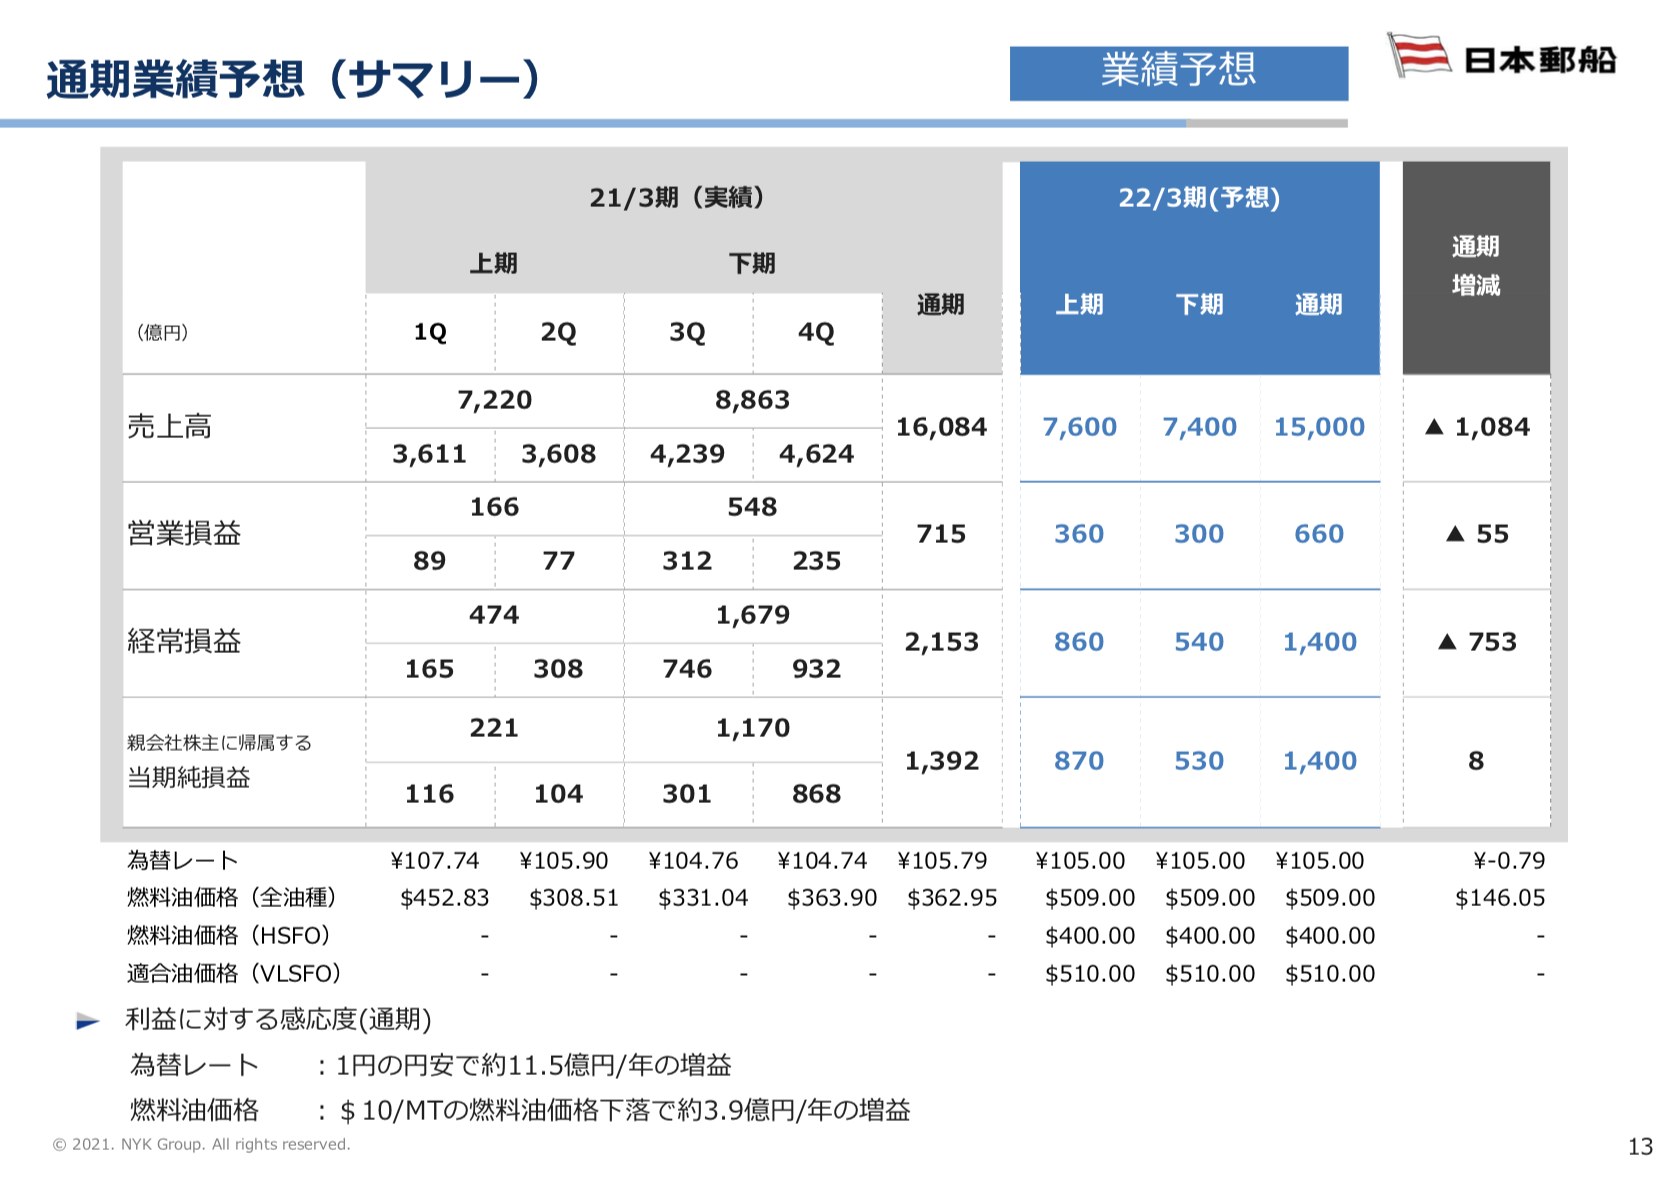 日本郵船株式会社 2021年3月期 通期決算説明会